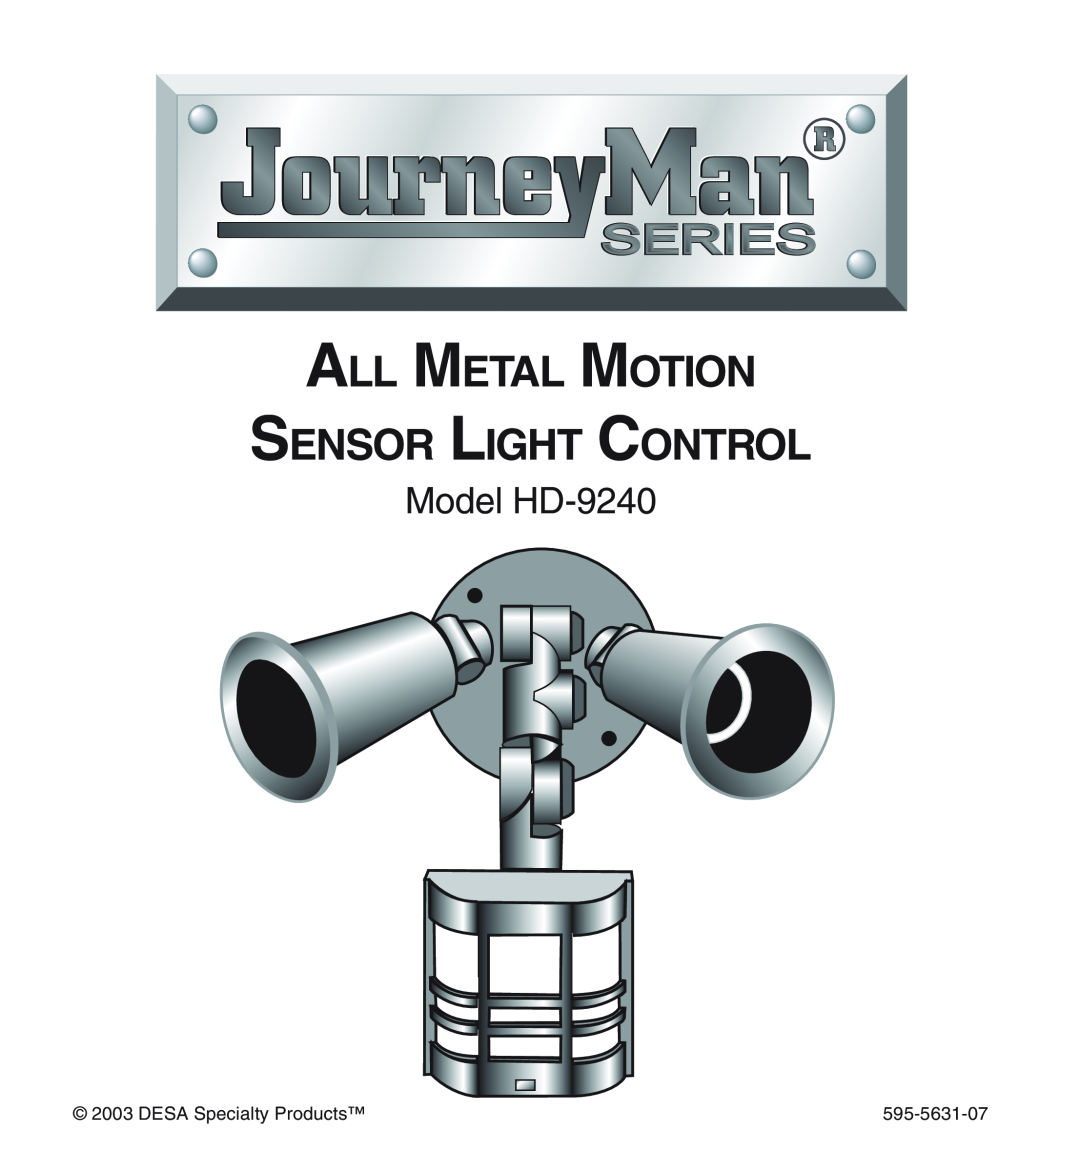 Desa manual Model HD-9240, All Metal Motion Sensor Light Control, DESA Specialty Products, 595-5631-07 